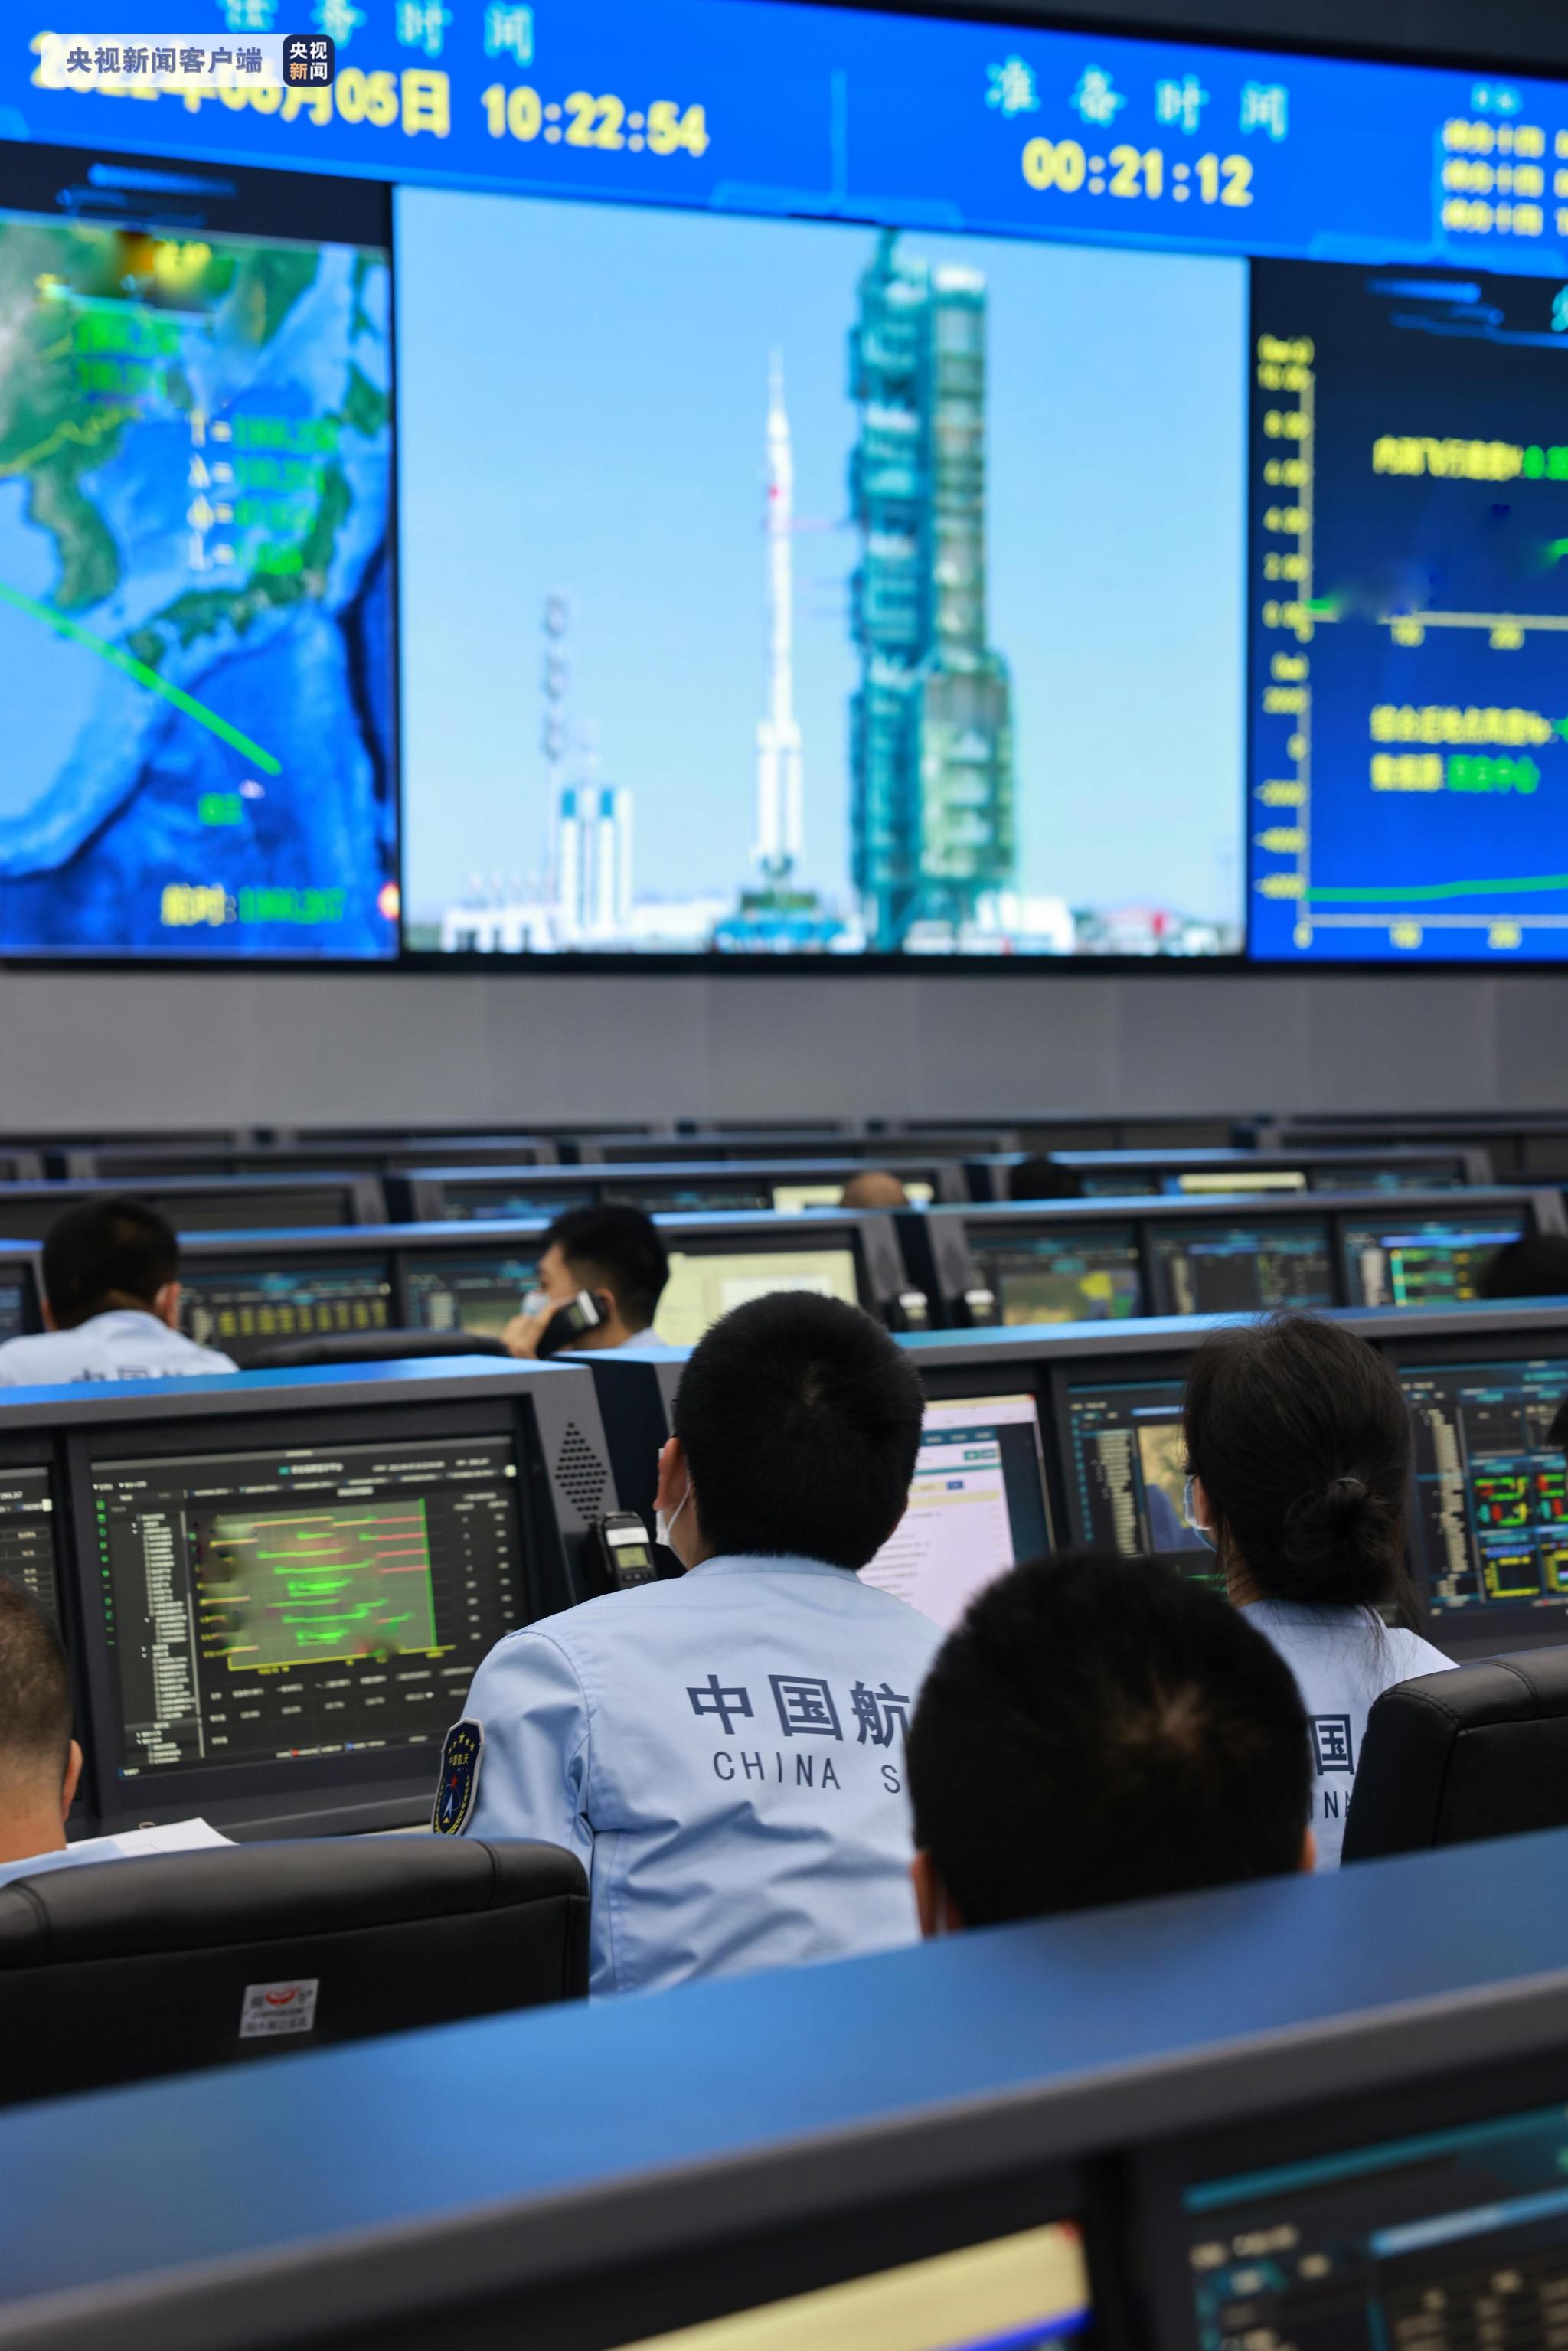 西安卫星测控中心完成52颗北斗导航卫星“体检”工作-中国科技网